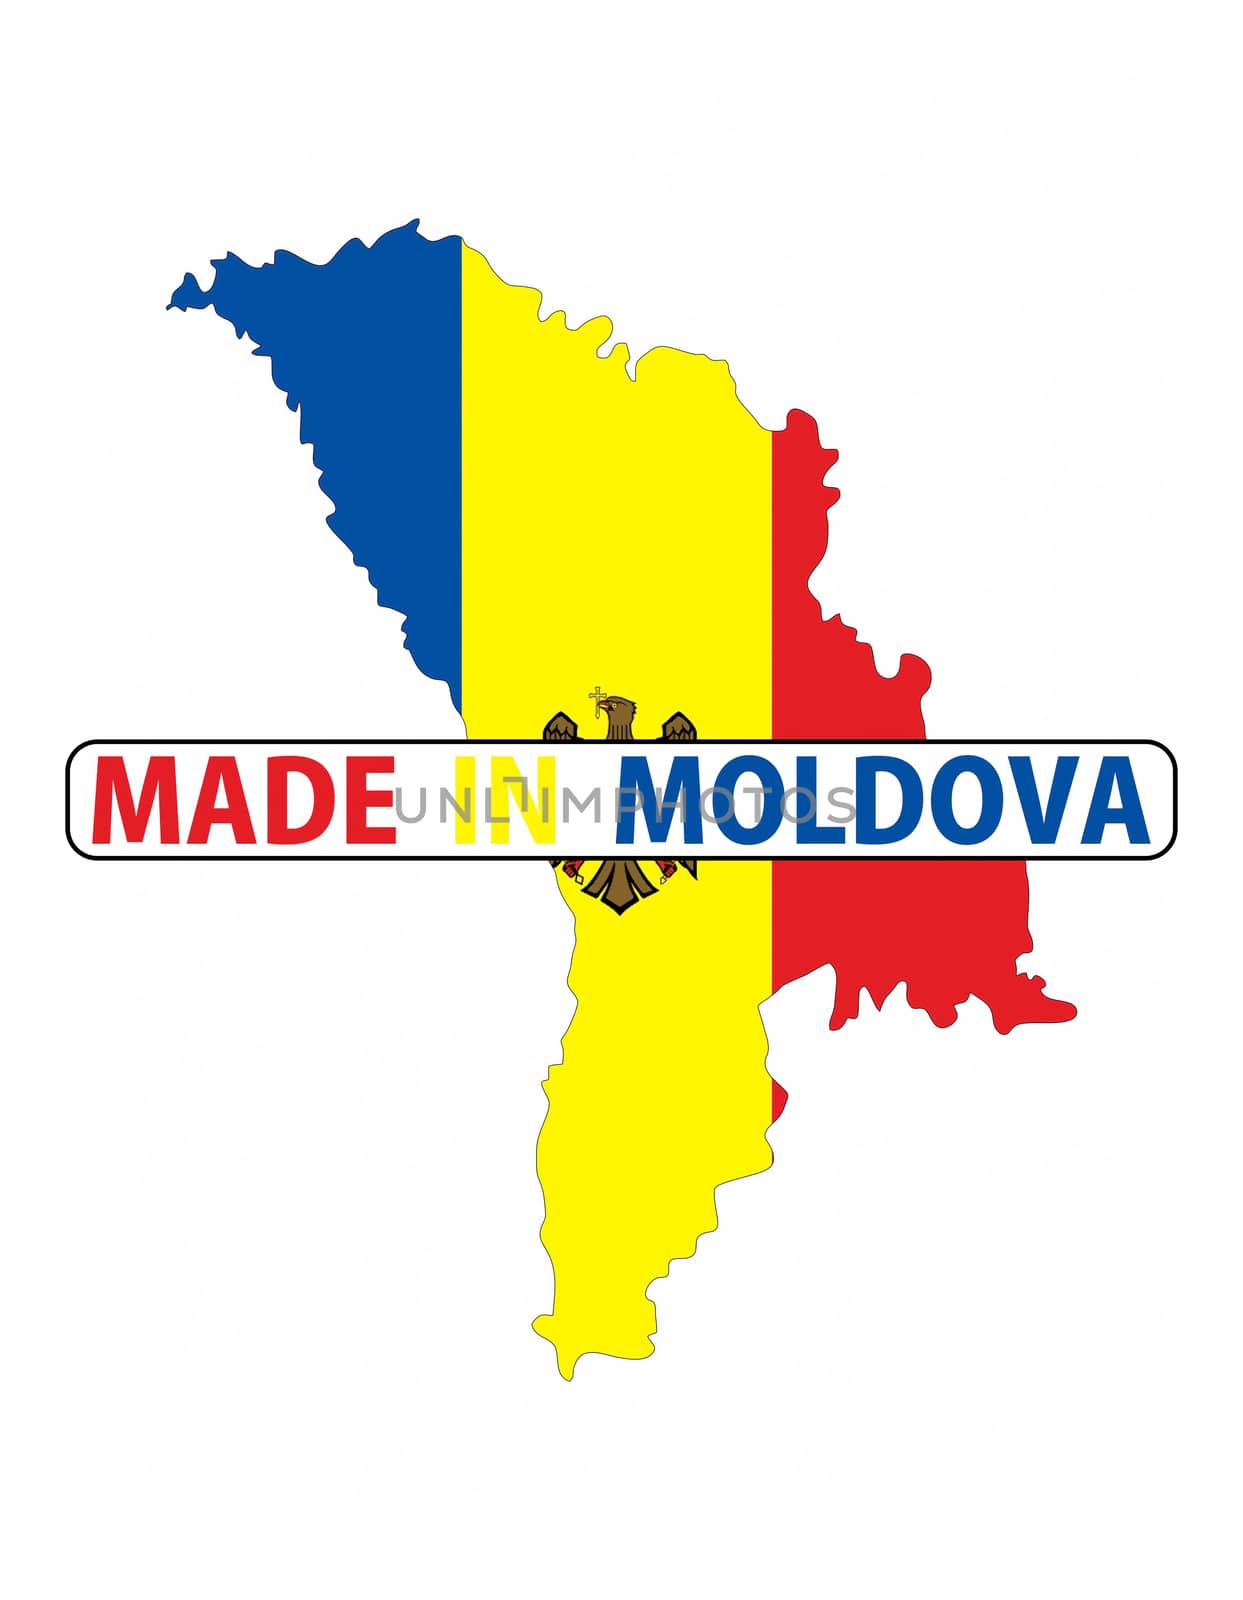 made in moldova by tony4urban